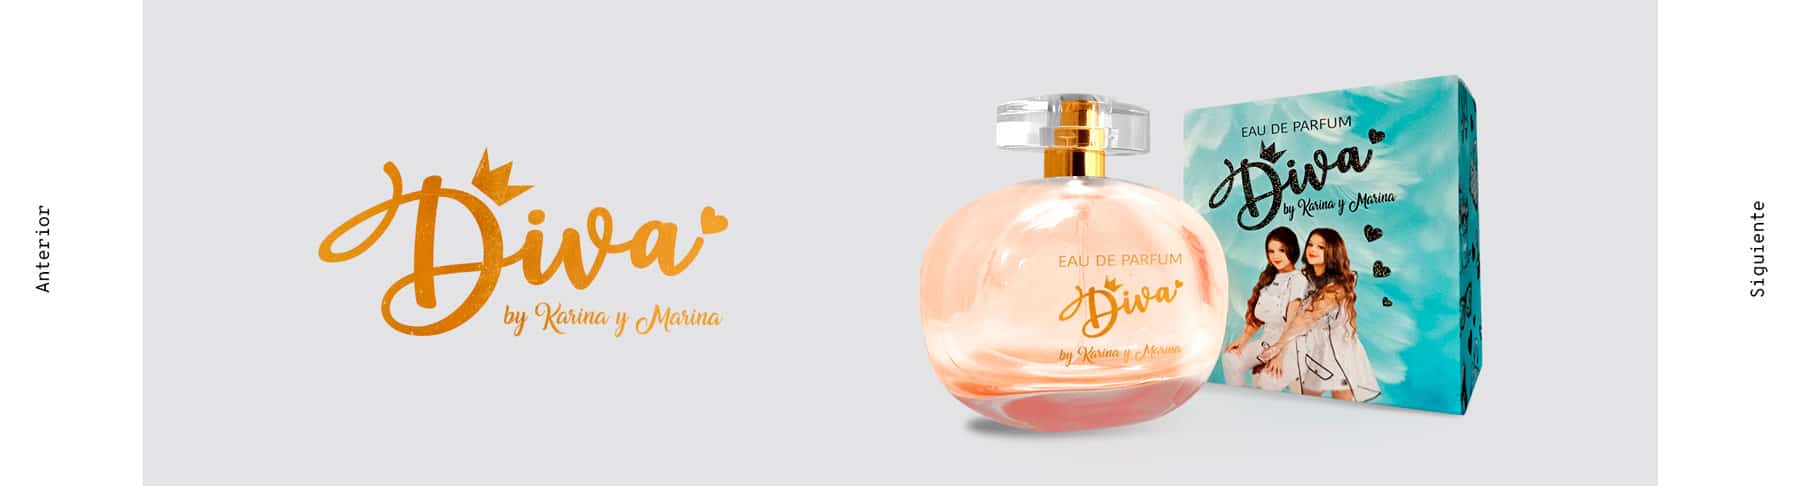 Proyecto Youtuber Karina y Marina - Diosa - Esenssi Aromas: Fabrica de Perfumes de Equivalencia